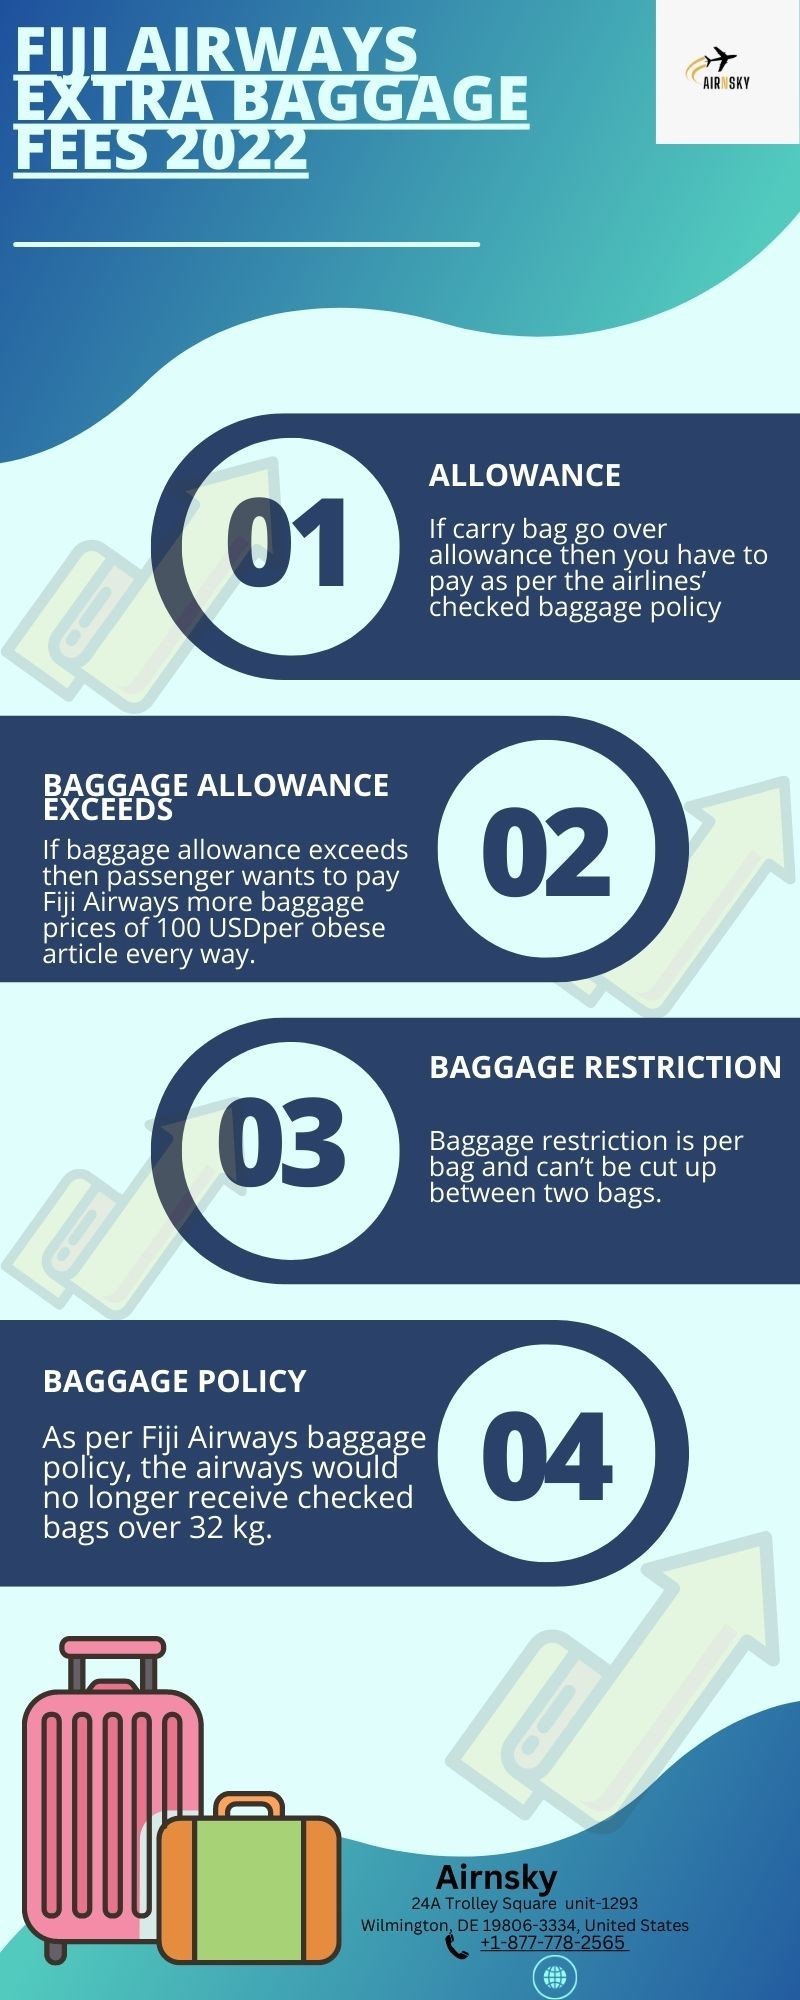 Fiji airways baggage fees 2022